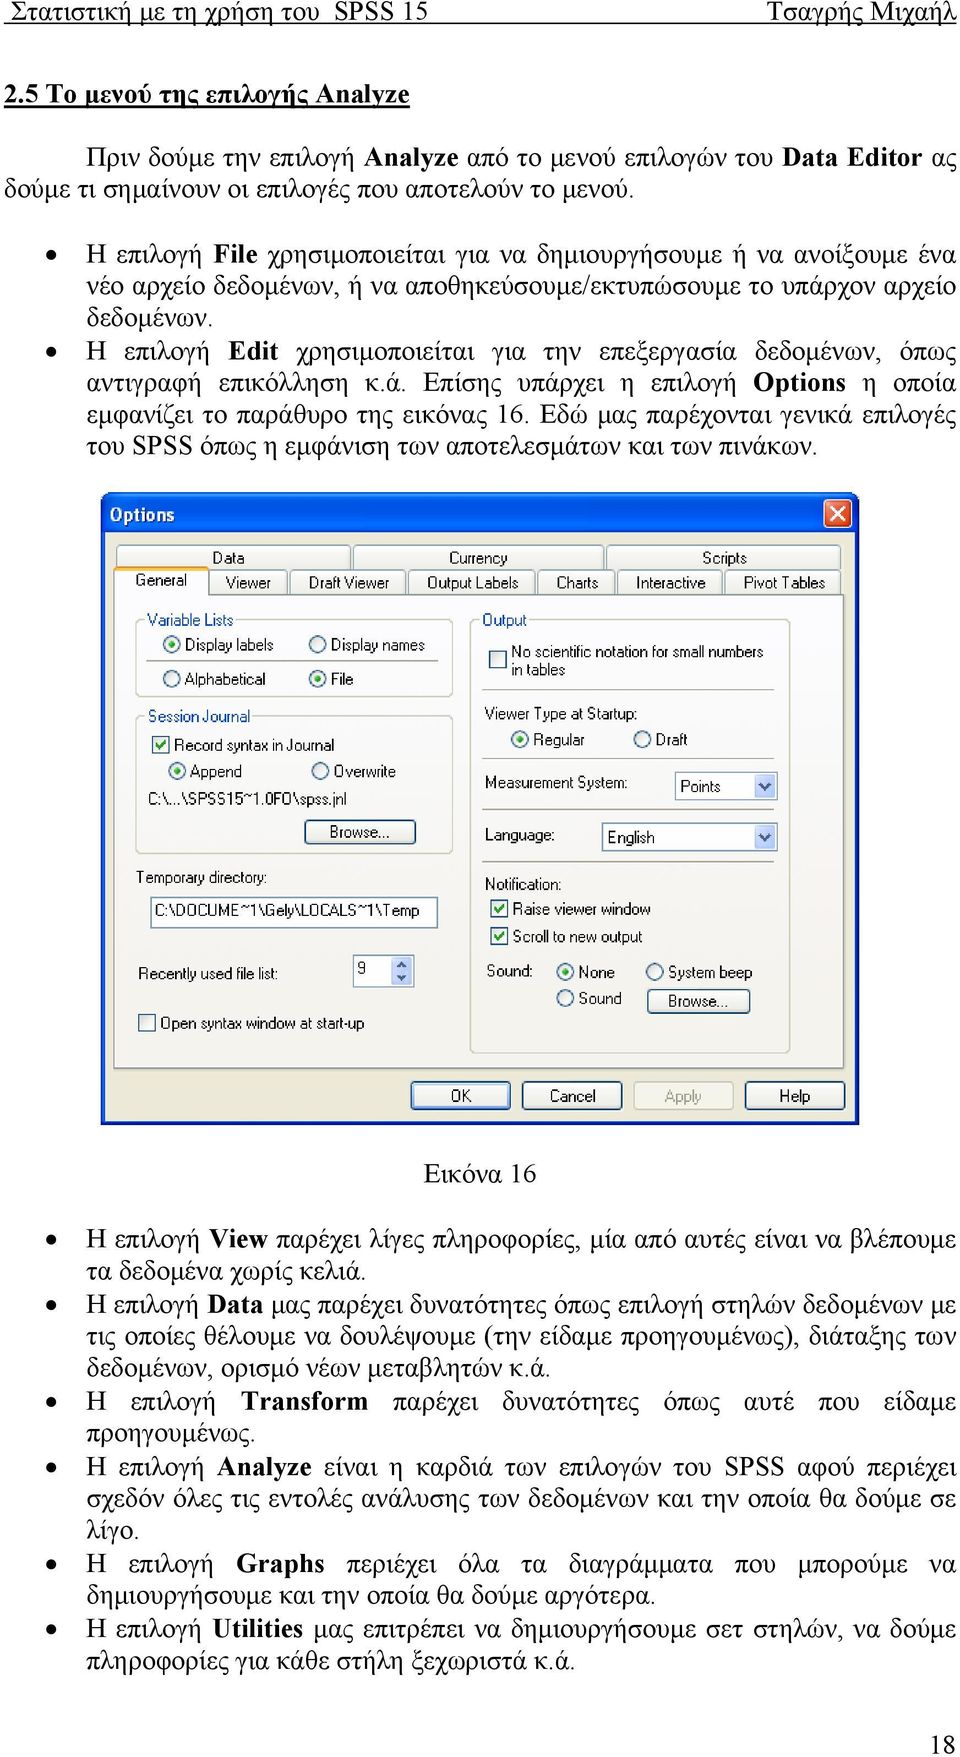 Η επιλογή Edit χρησιμοποιείται για την επεξεργασία δεδομένων, όπως αντιγραφή επικόλληση κ.ά. Επίσης υπάρχει η επιλογή Options η οποία εμφανίζει το παράθυρο της εικόνας 16.